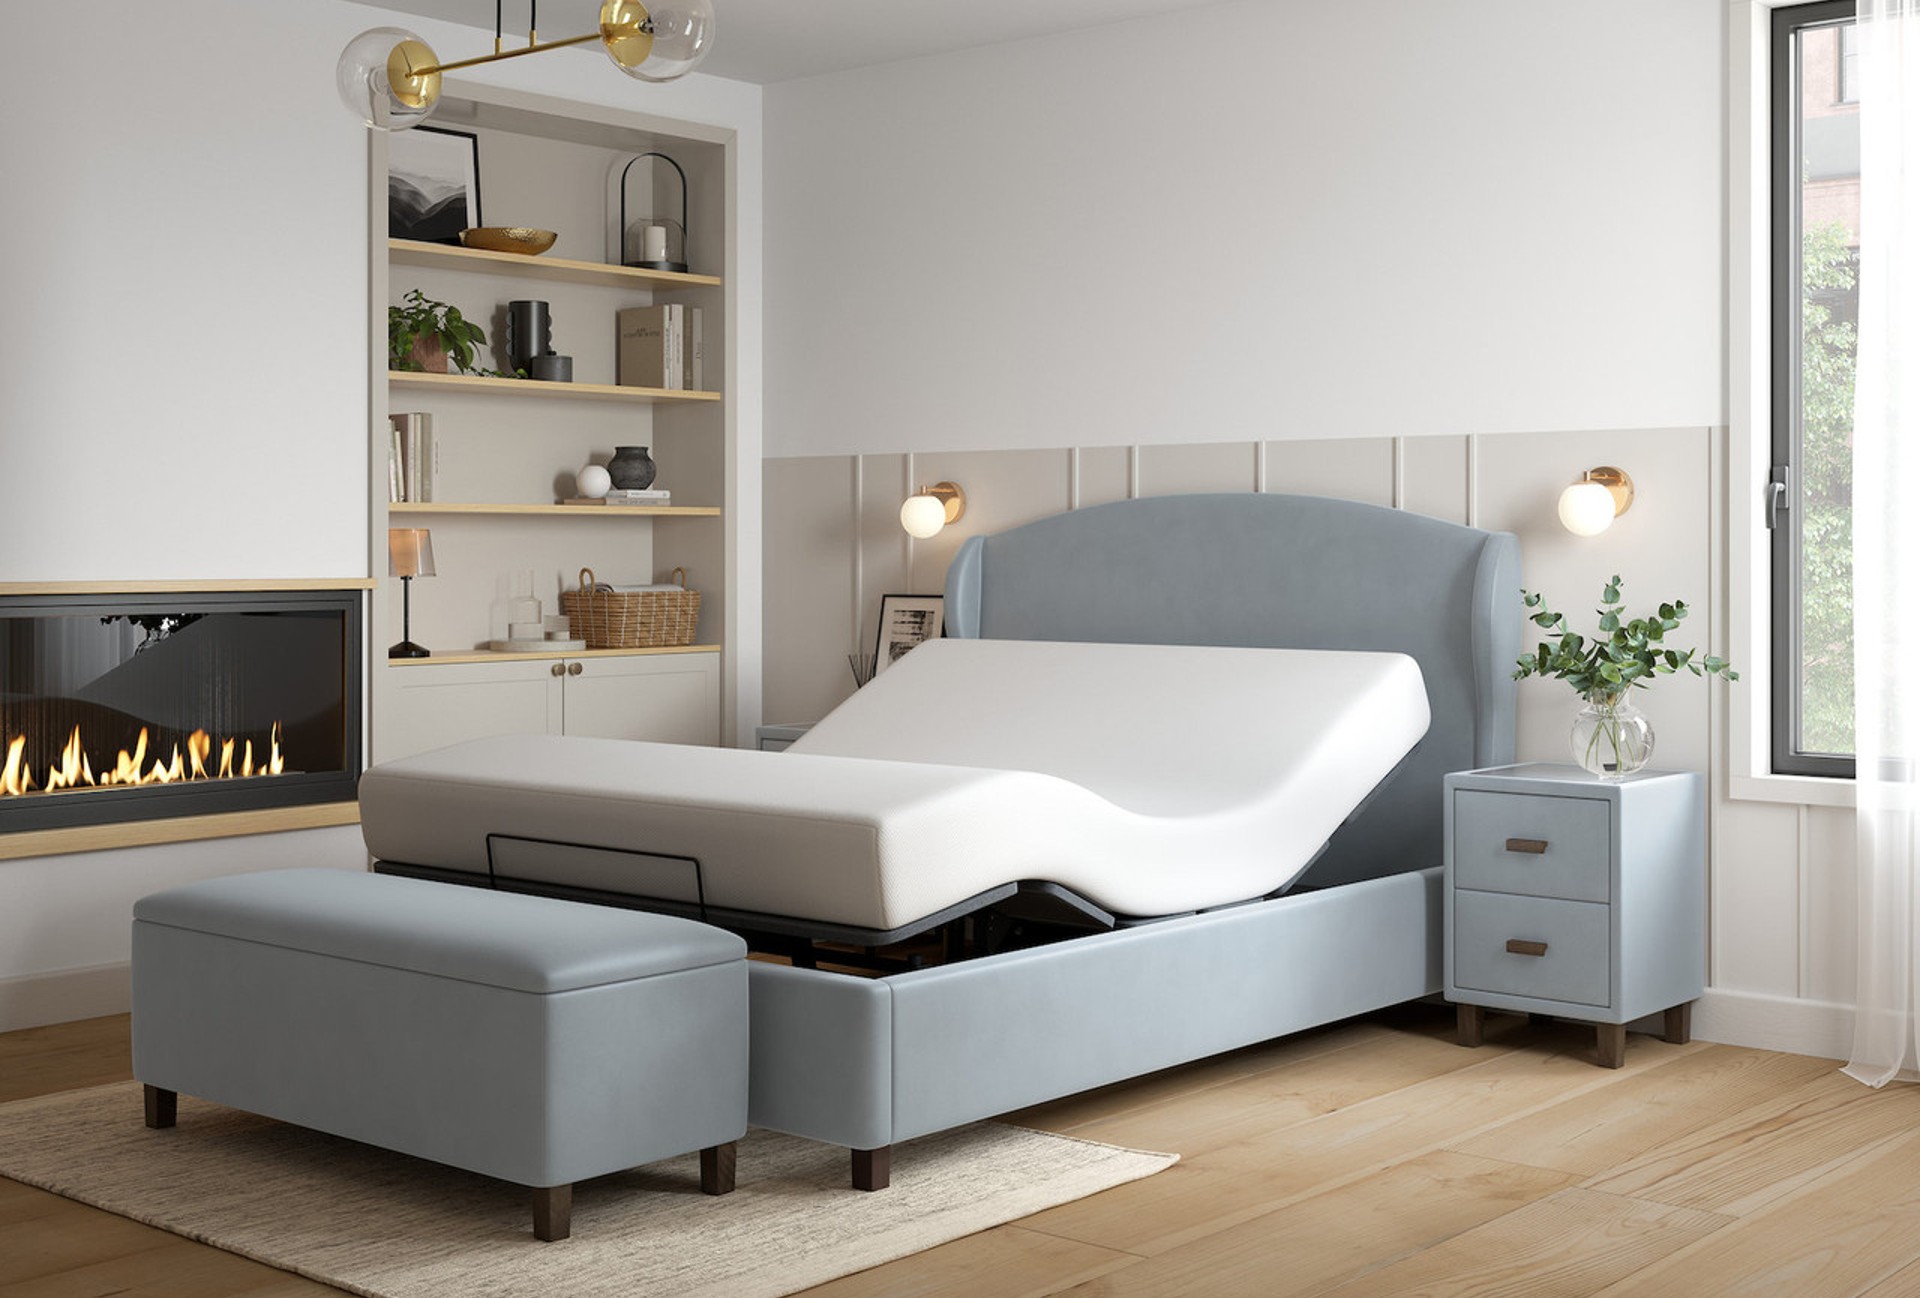 Snooze Sunset adjustable bed frame in opulence platinum